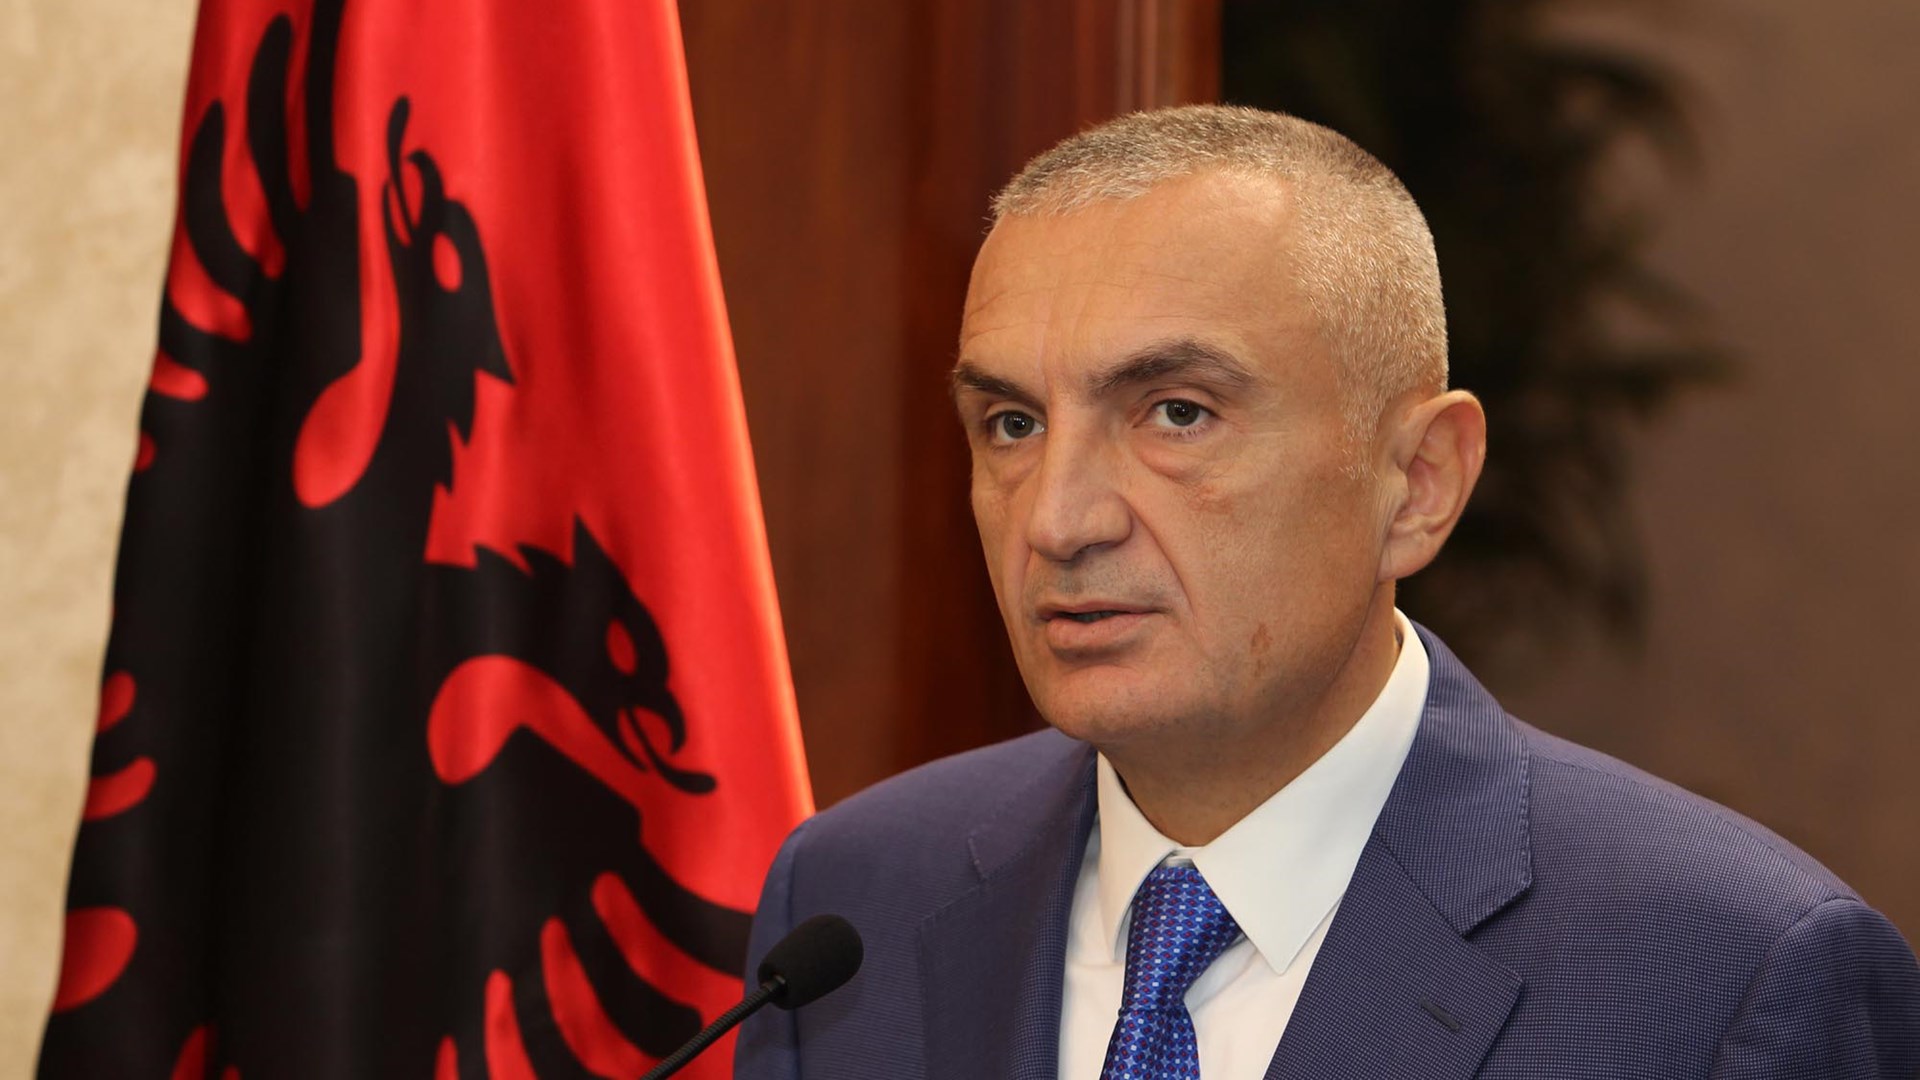 Αυτός είναι ο νέος Πρόεδρος της Δημοκρατίας της Αλβανίας